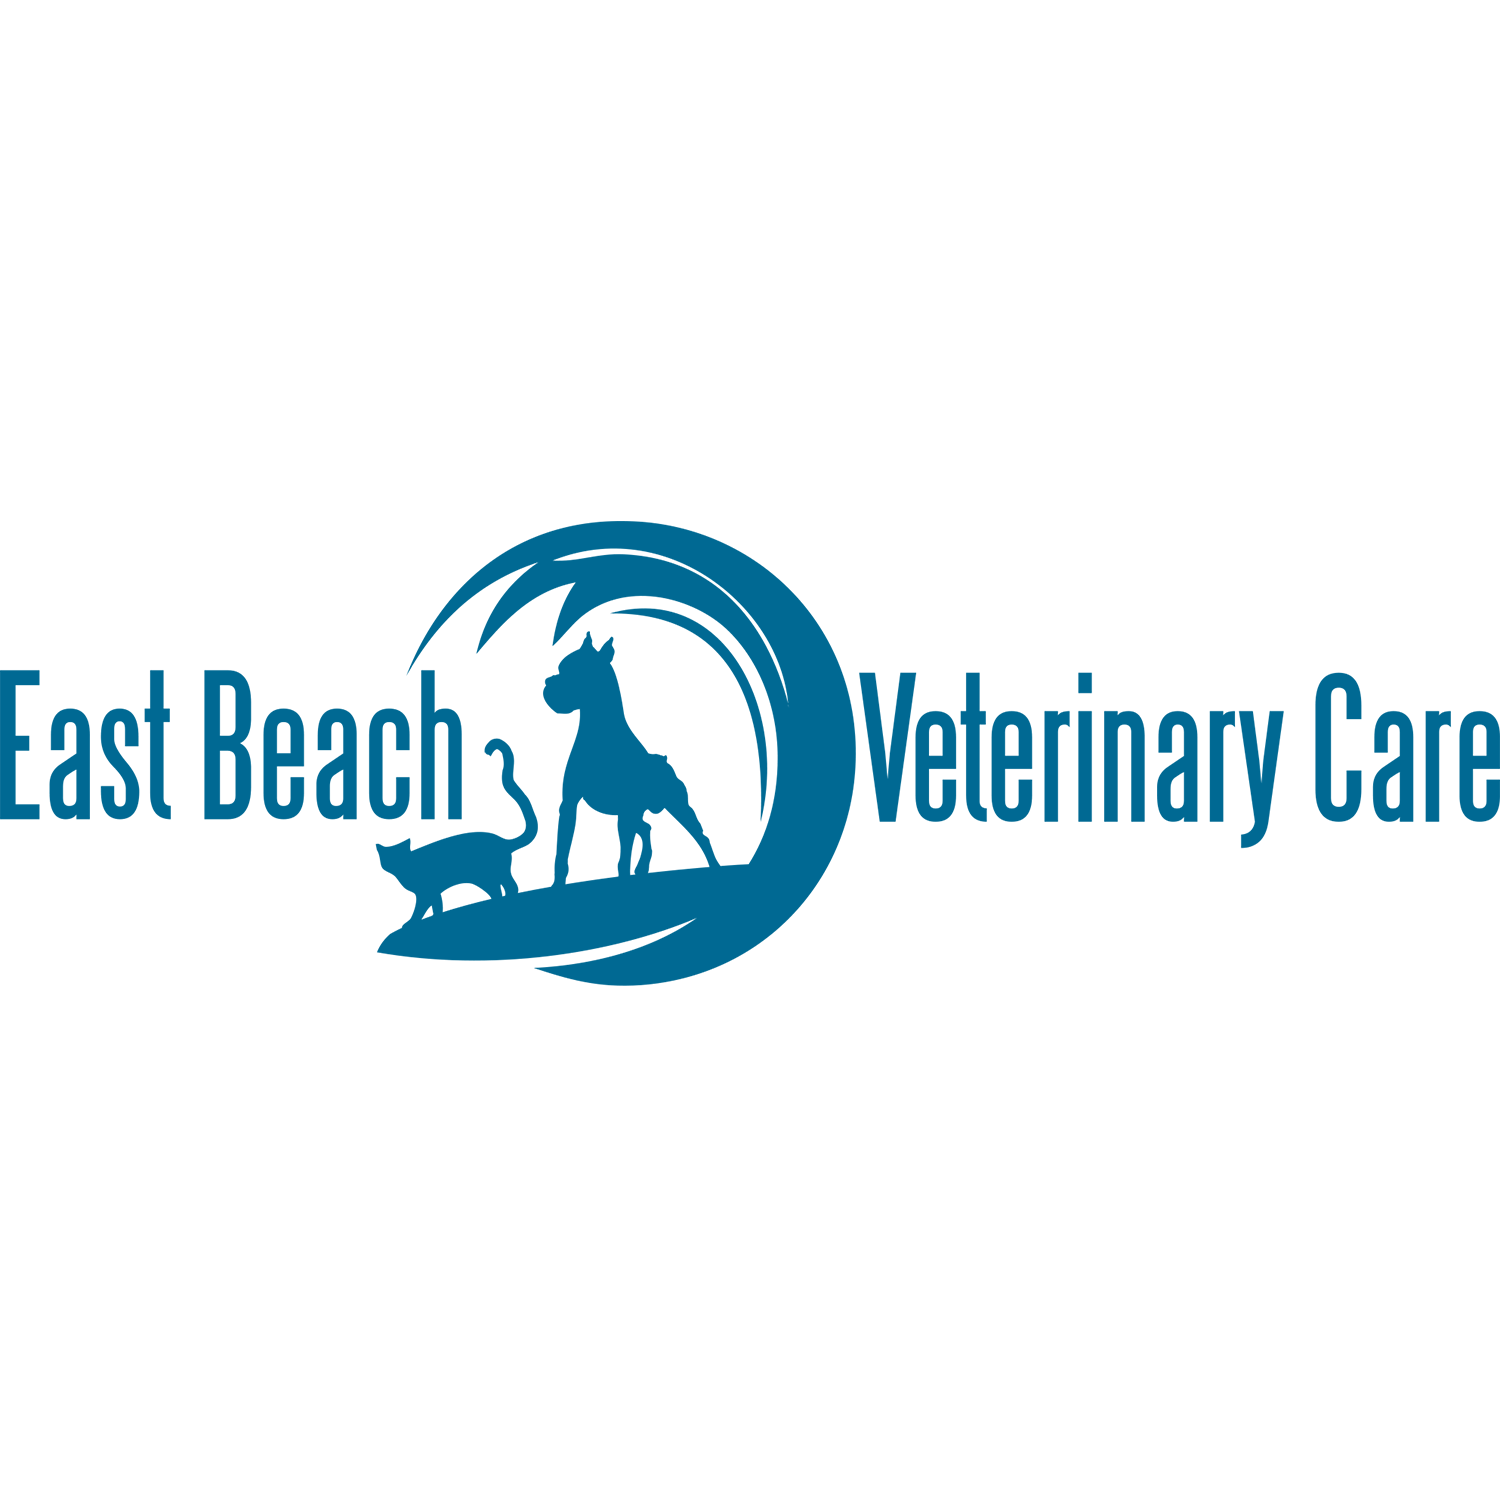 East Beach Veterinary Care - Norfolk, VA 23518 - (757)963-8387 | ShowMeLocal.com